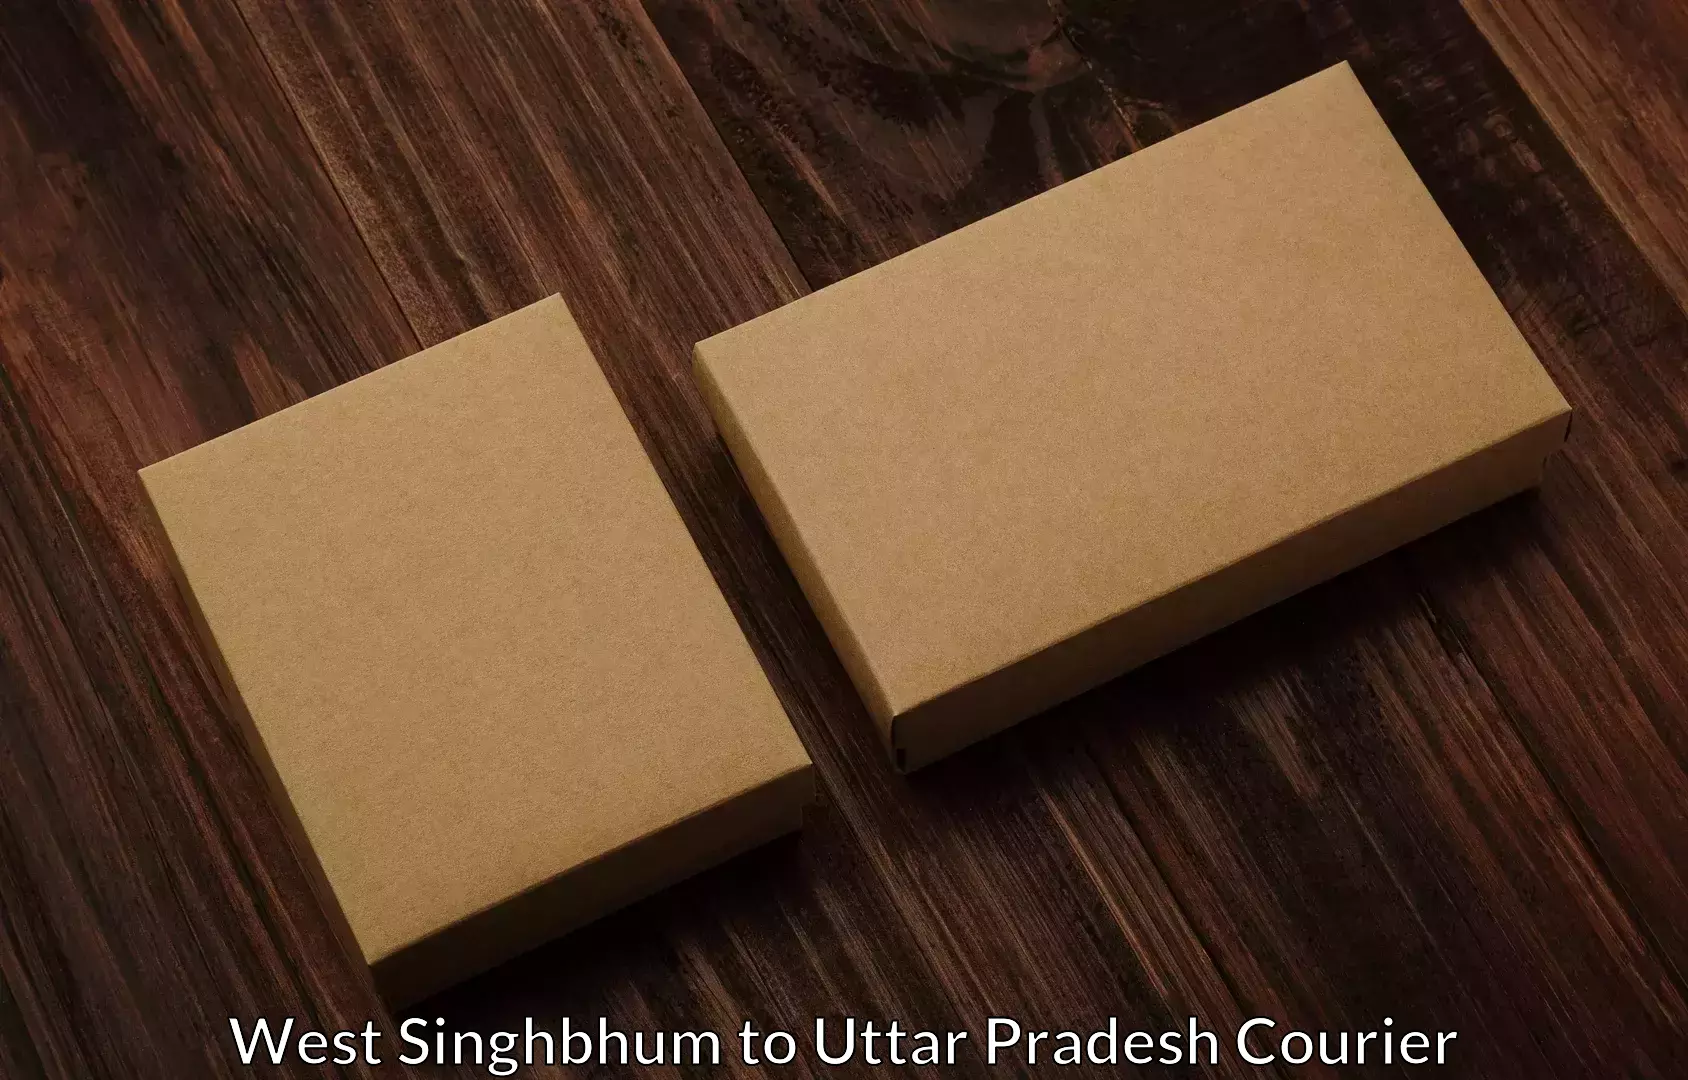 Furniture moving experts West Singhbhum to Nizamabad Azamgarh